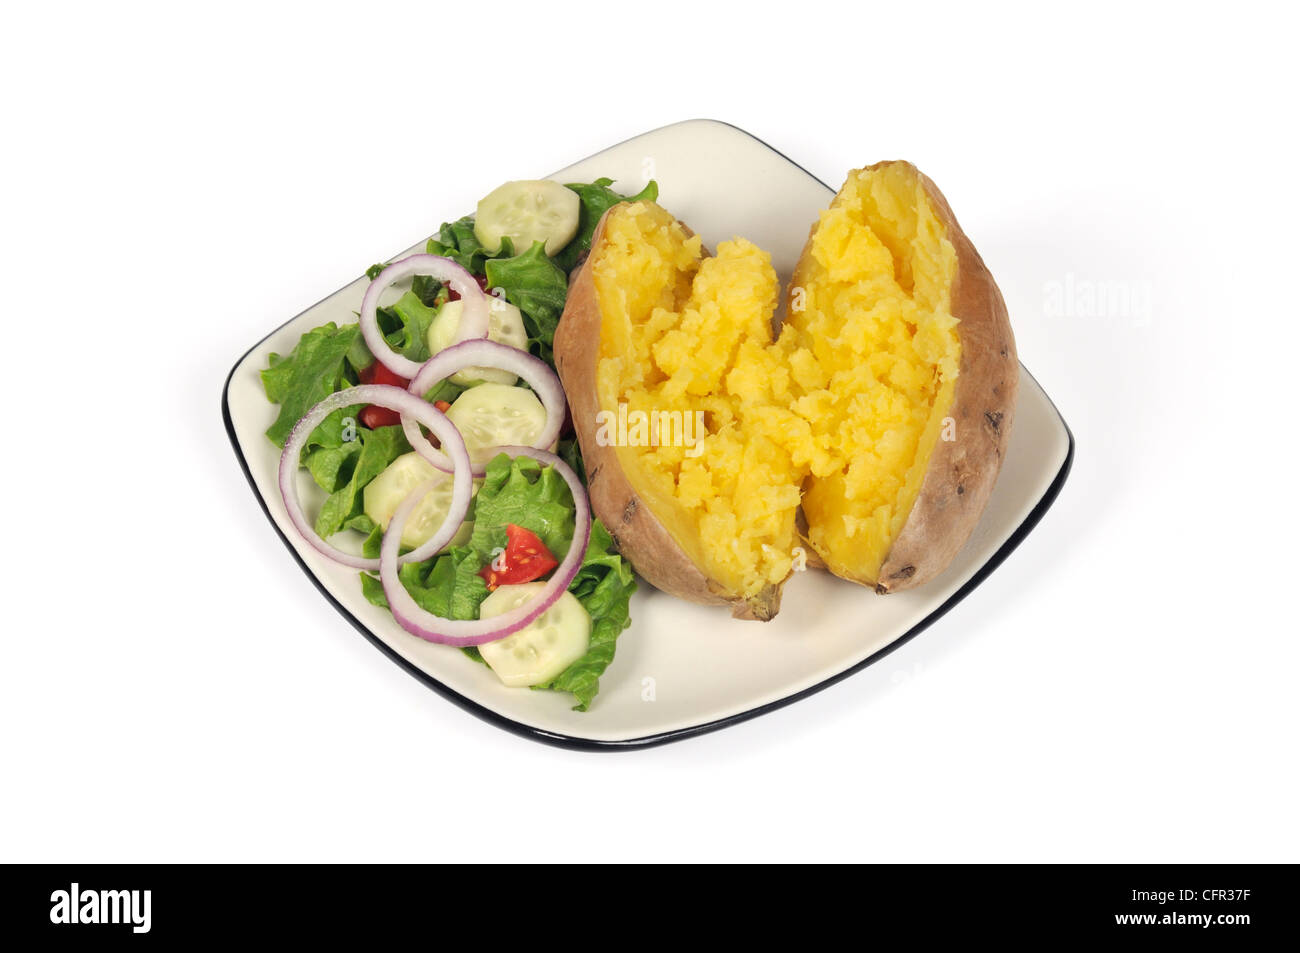 Dolci al forno con patate burro fuso con giardino verde insalata su una piastra su sfondo bianco tagliato fuori Foto Stock